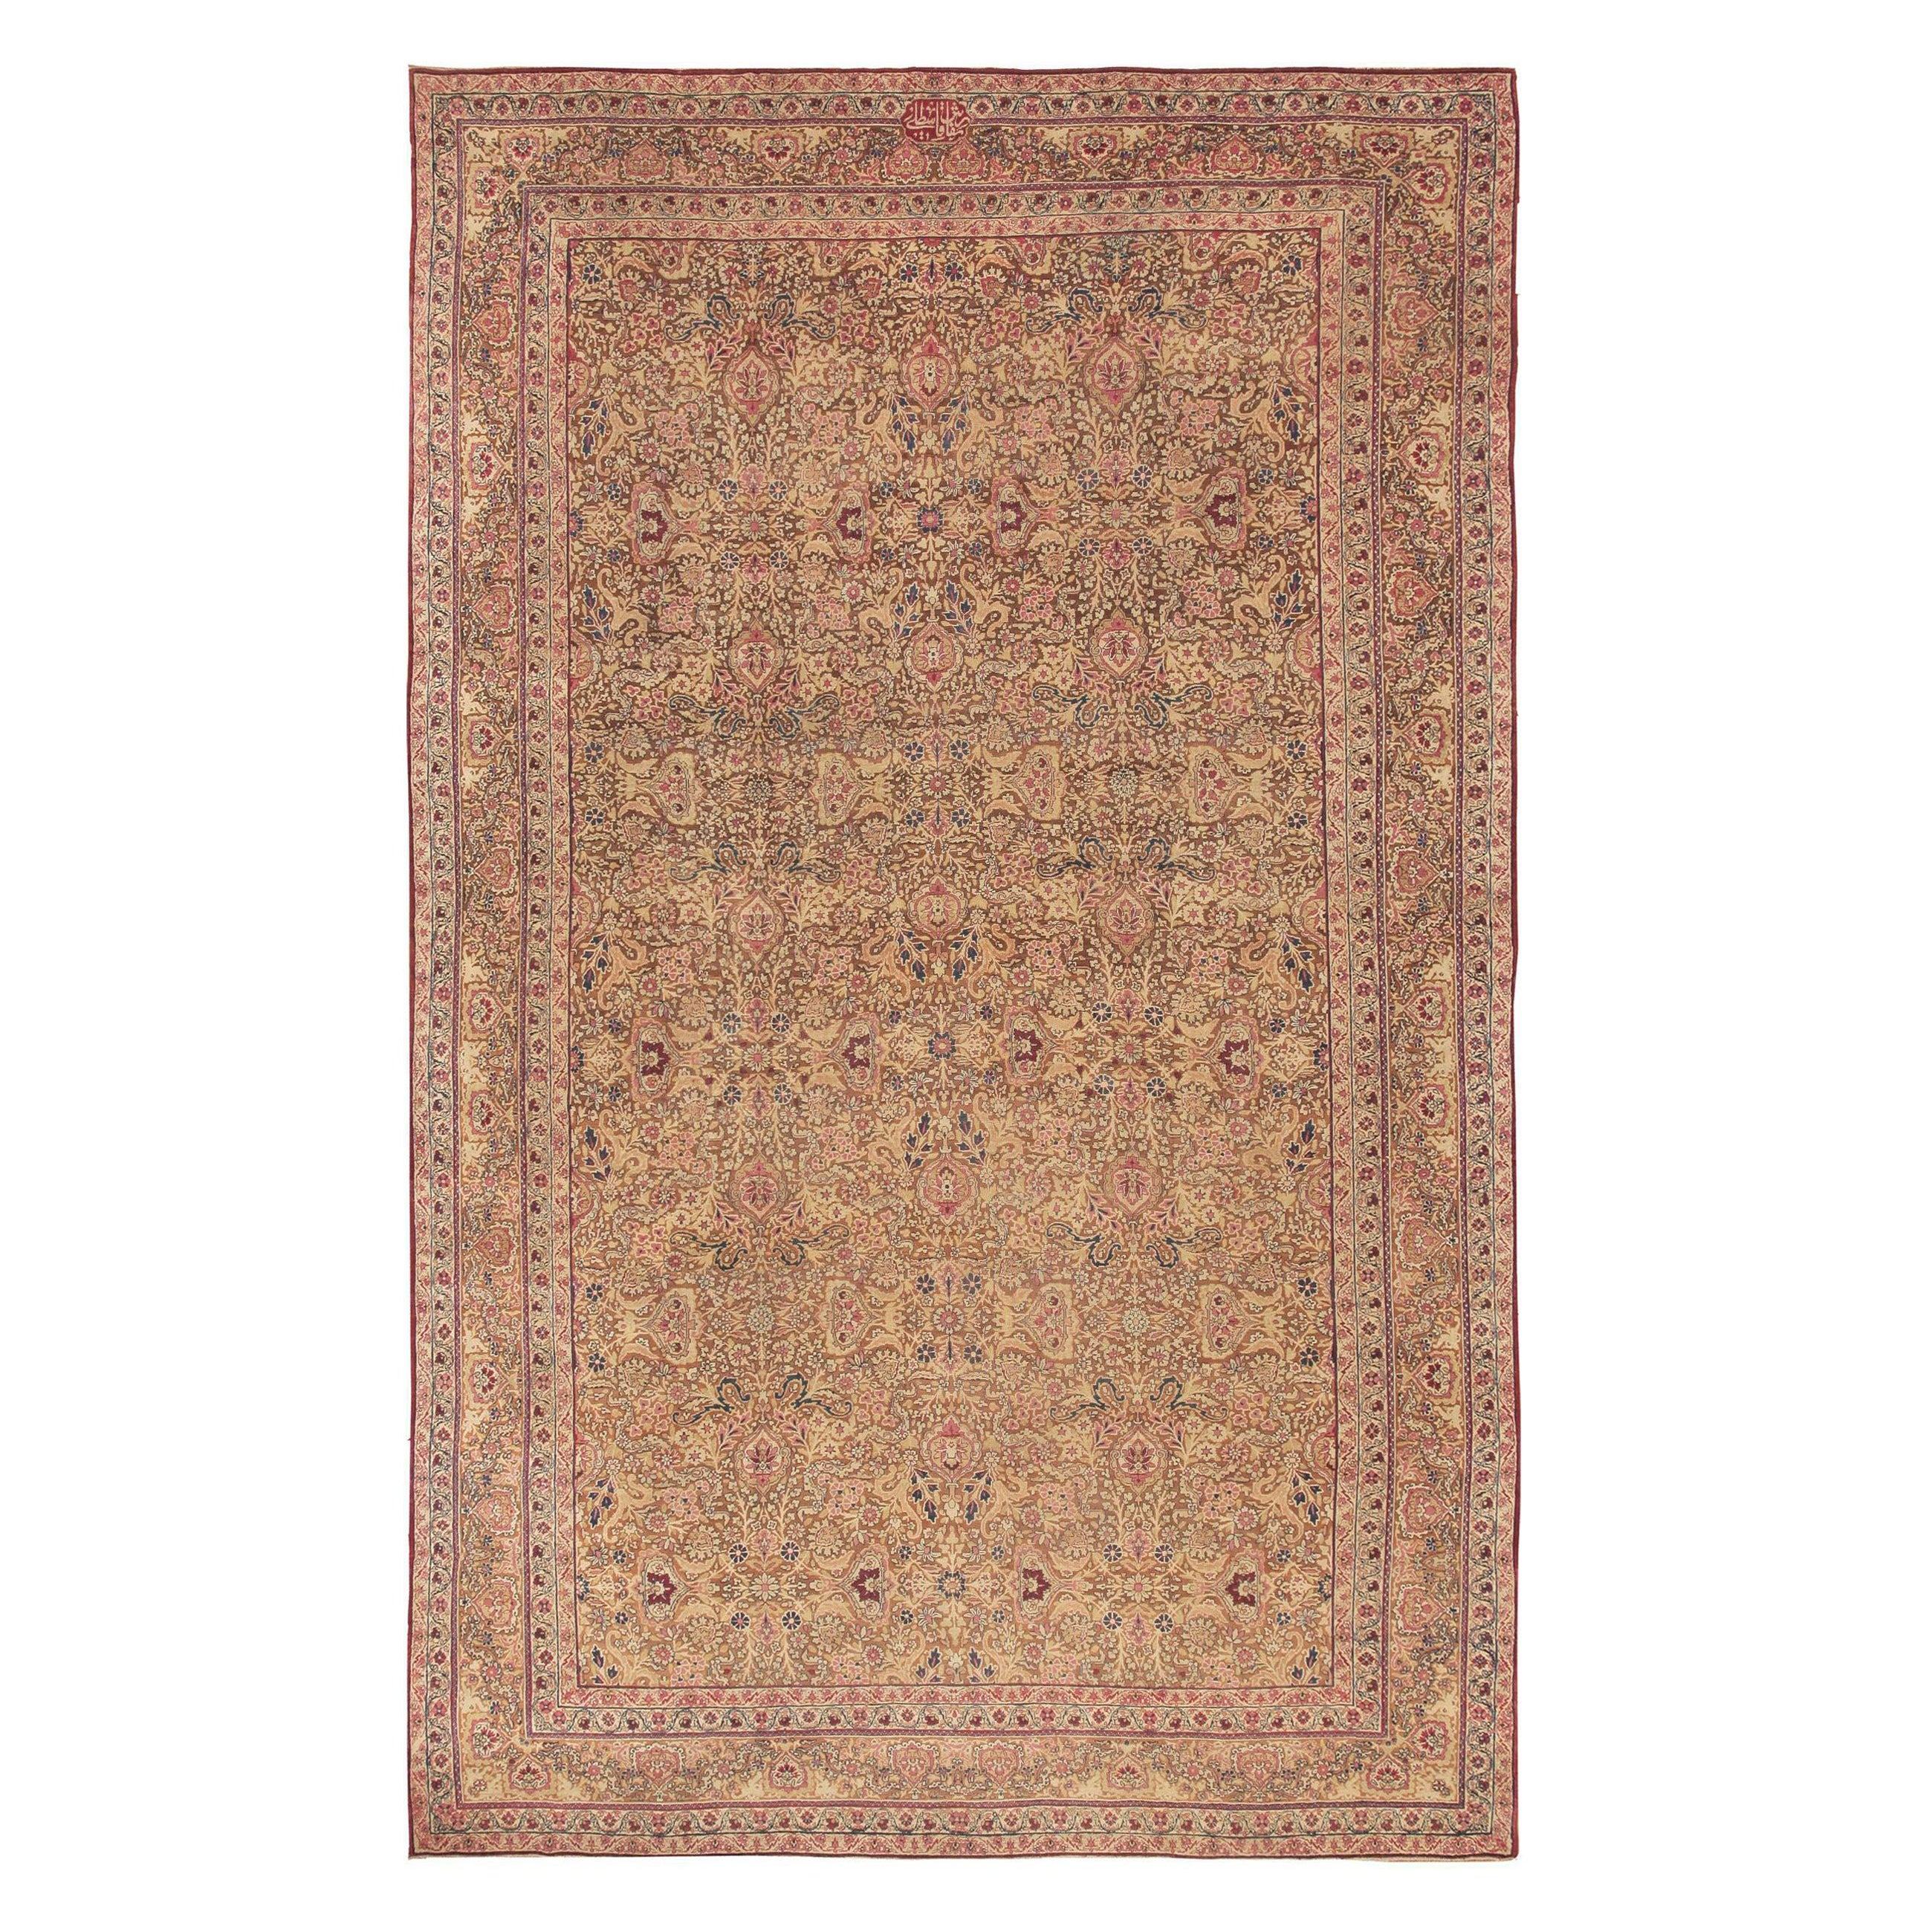 Antique Persian Kerman Carpet. Size: 11' 6" x 17' 9" For Sale